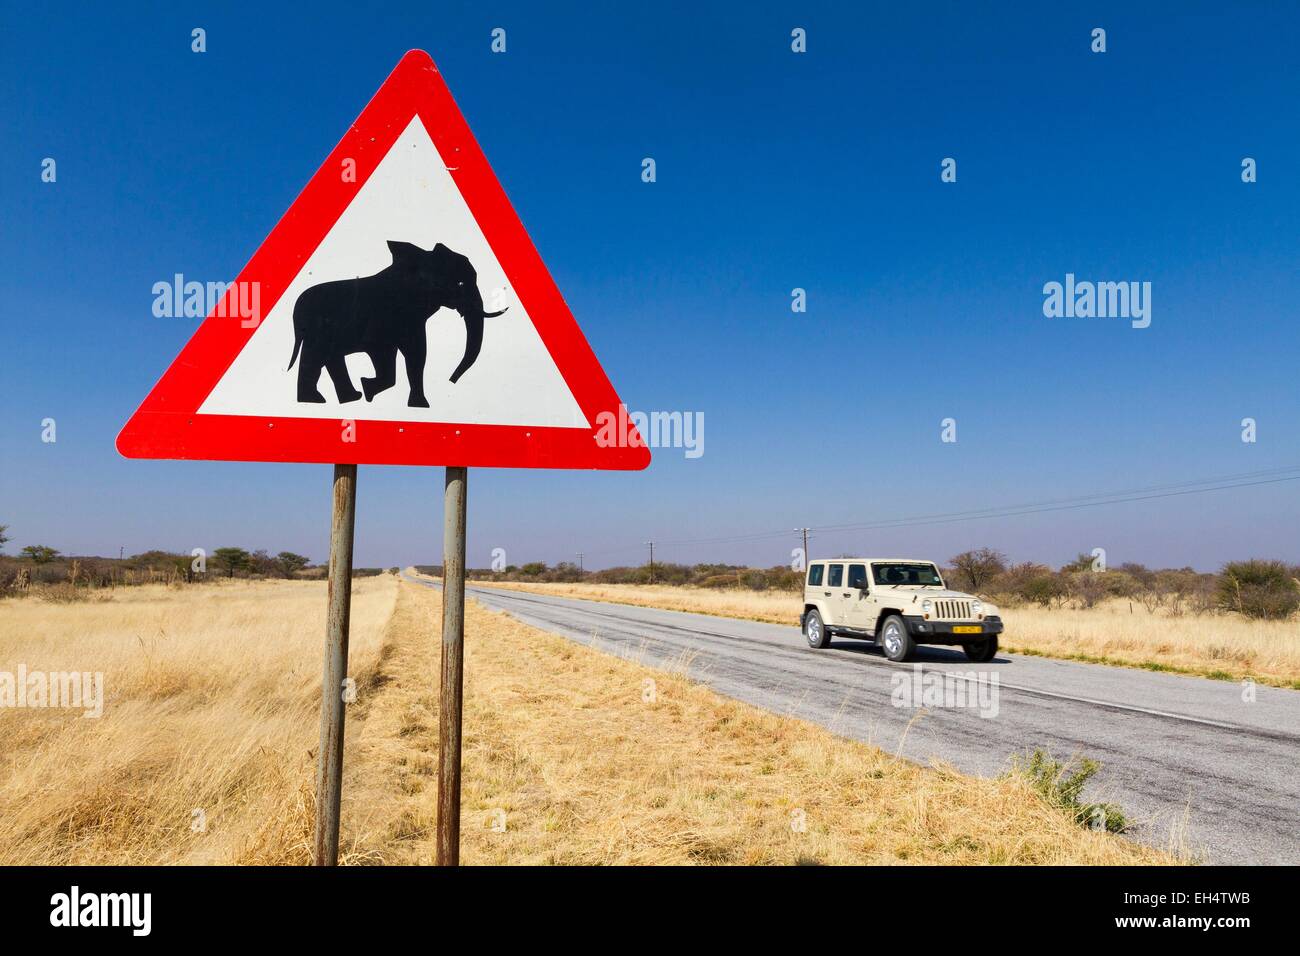 Namibia, Kunene region, roadsign indicating the presence of elephants Stock Photo